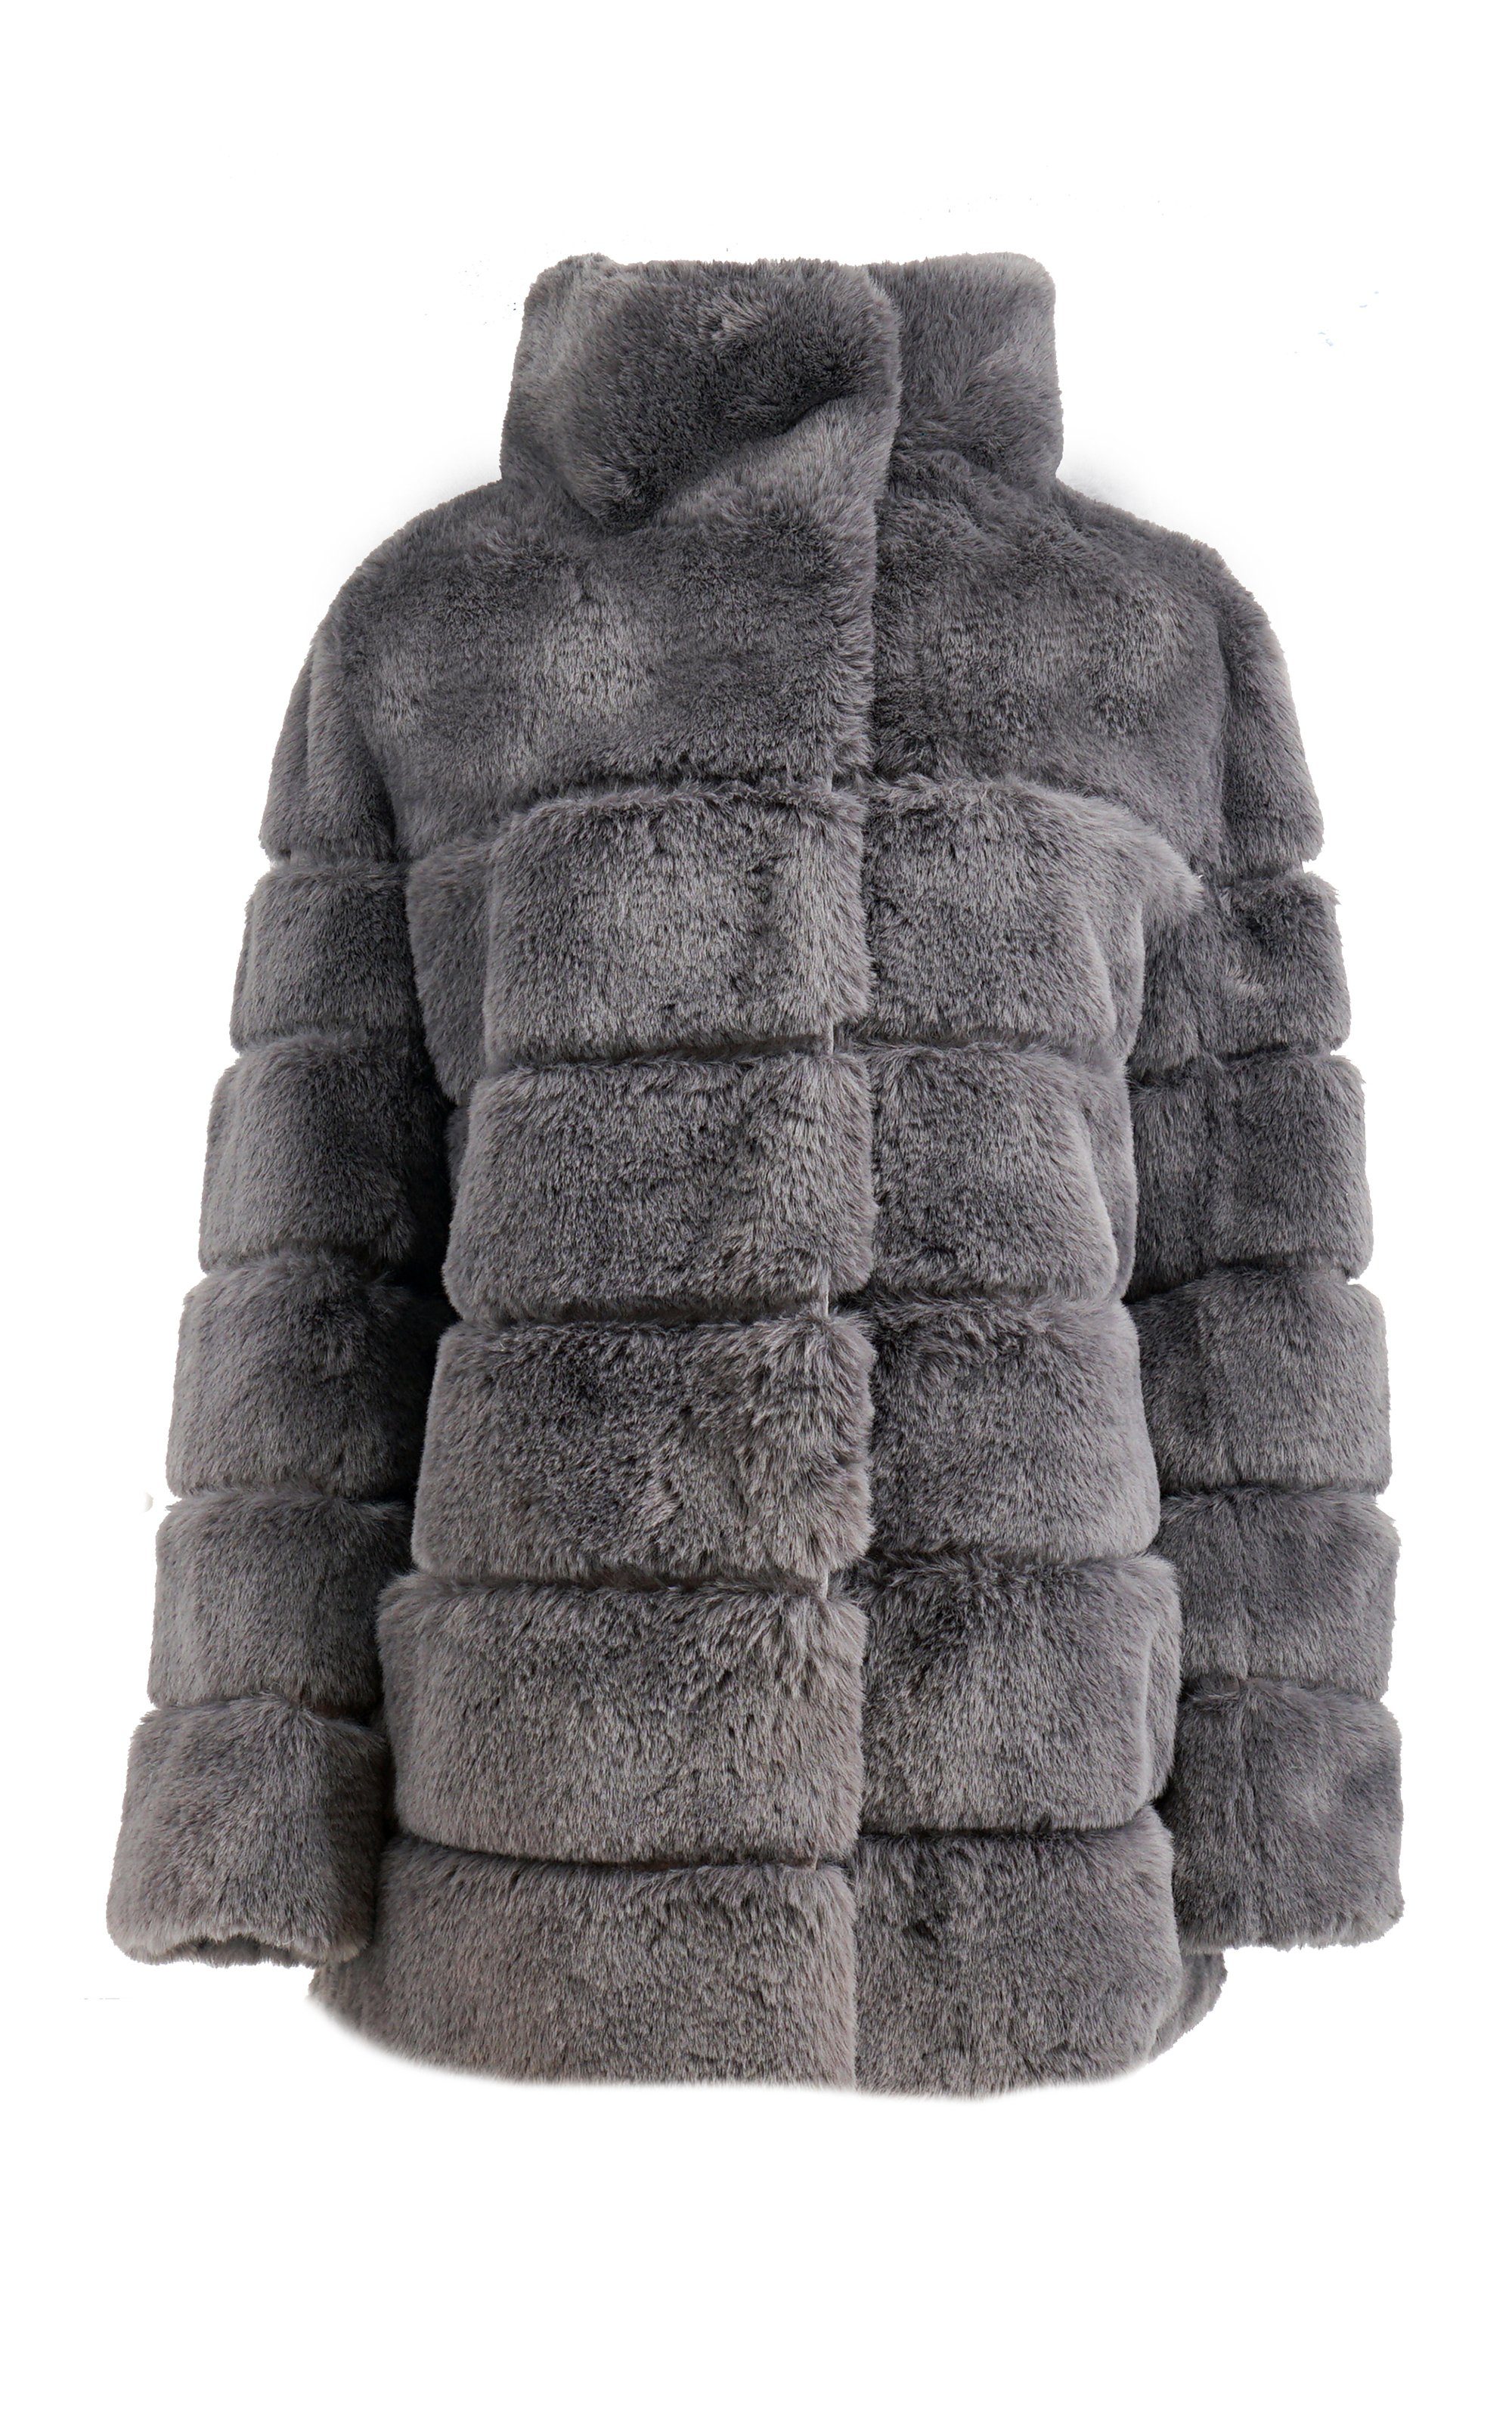 Antonio Cavosi Winterjacke hochwertige Web-Pelz Jacke mit Umlegekragen in großer Größe erhältlich